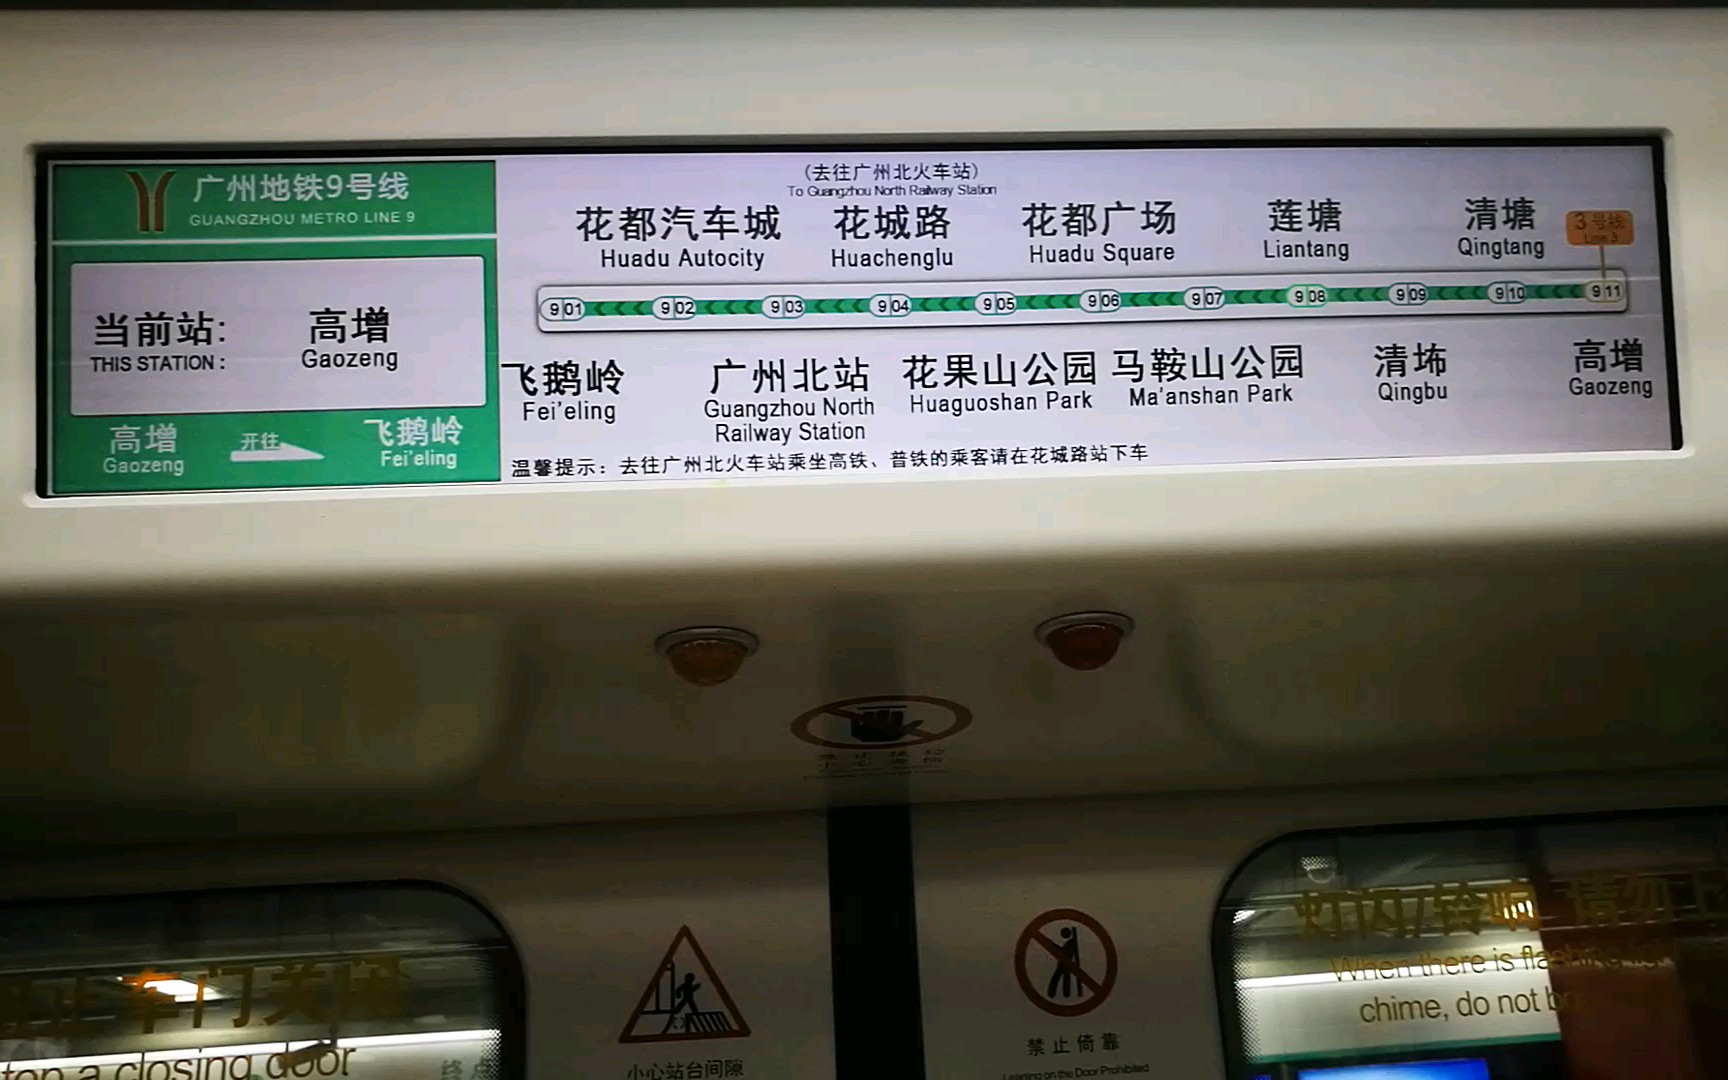 广州地铁9号线高增清塘运行与报站飞鹅岭方向